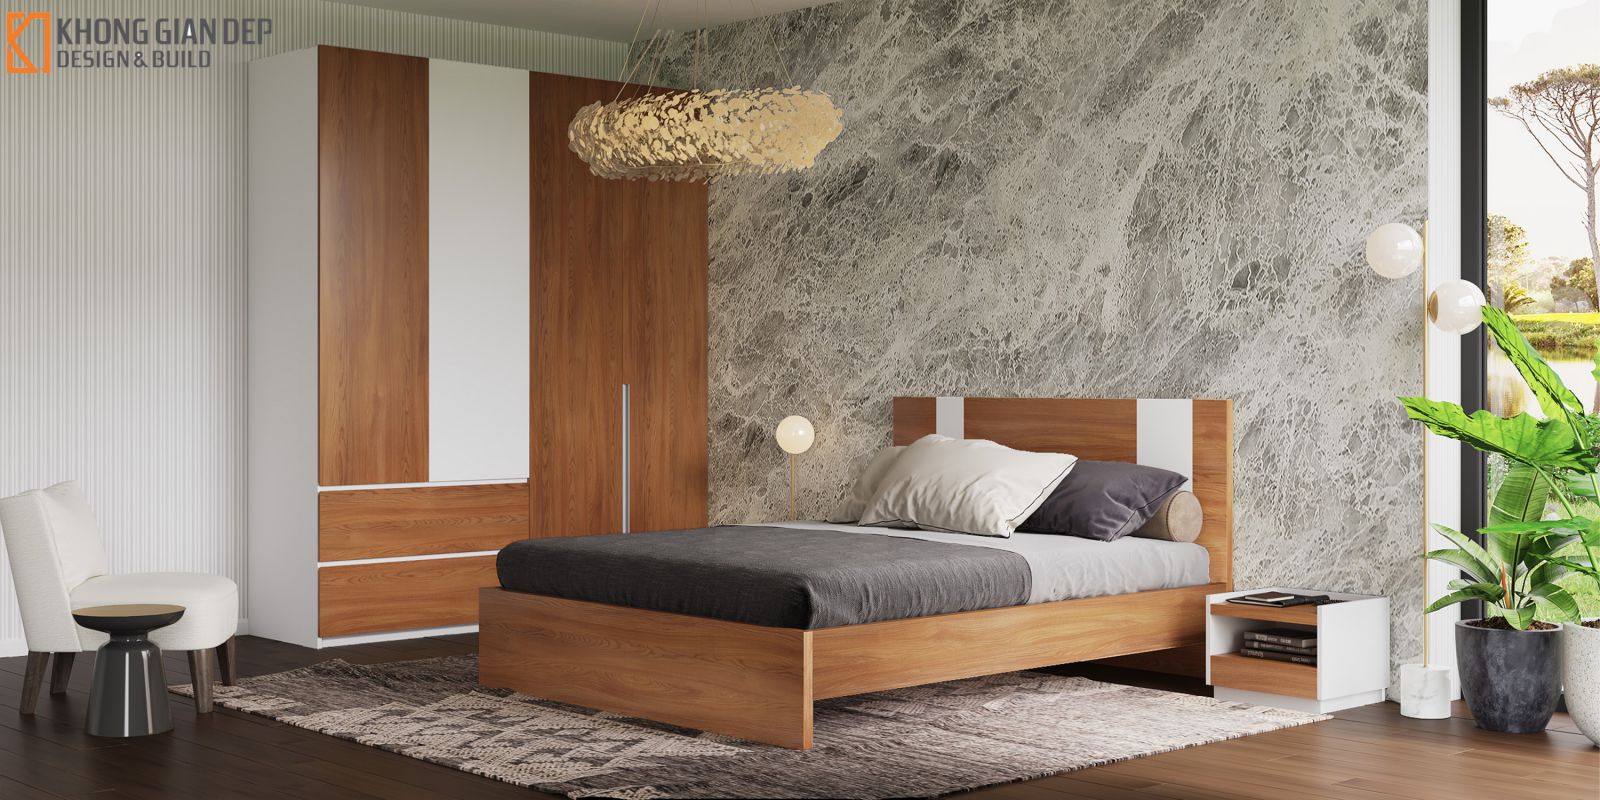 mẫu giường gỗ công nghiệp